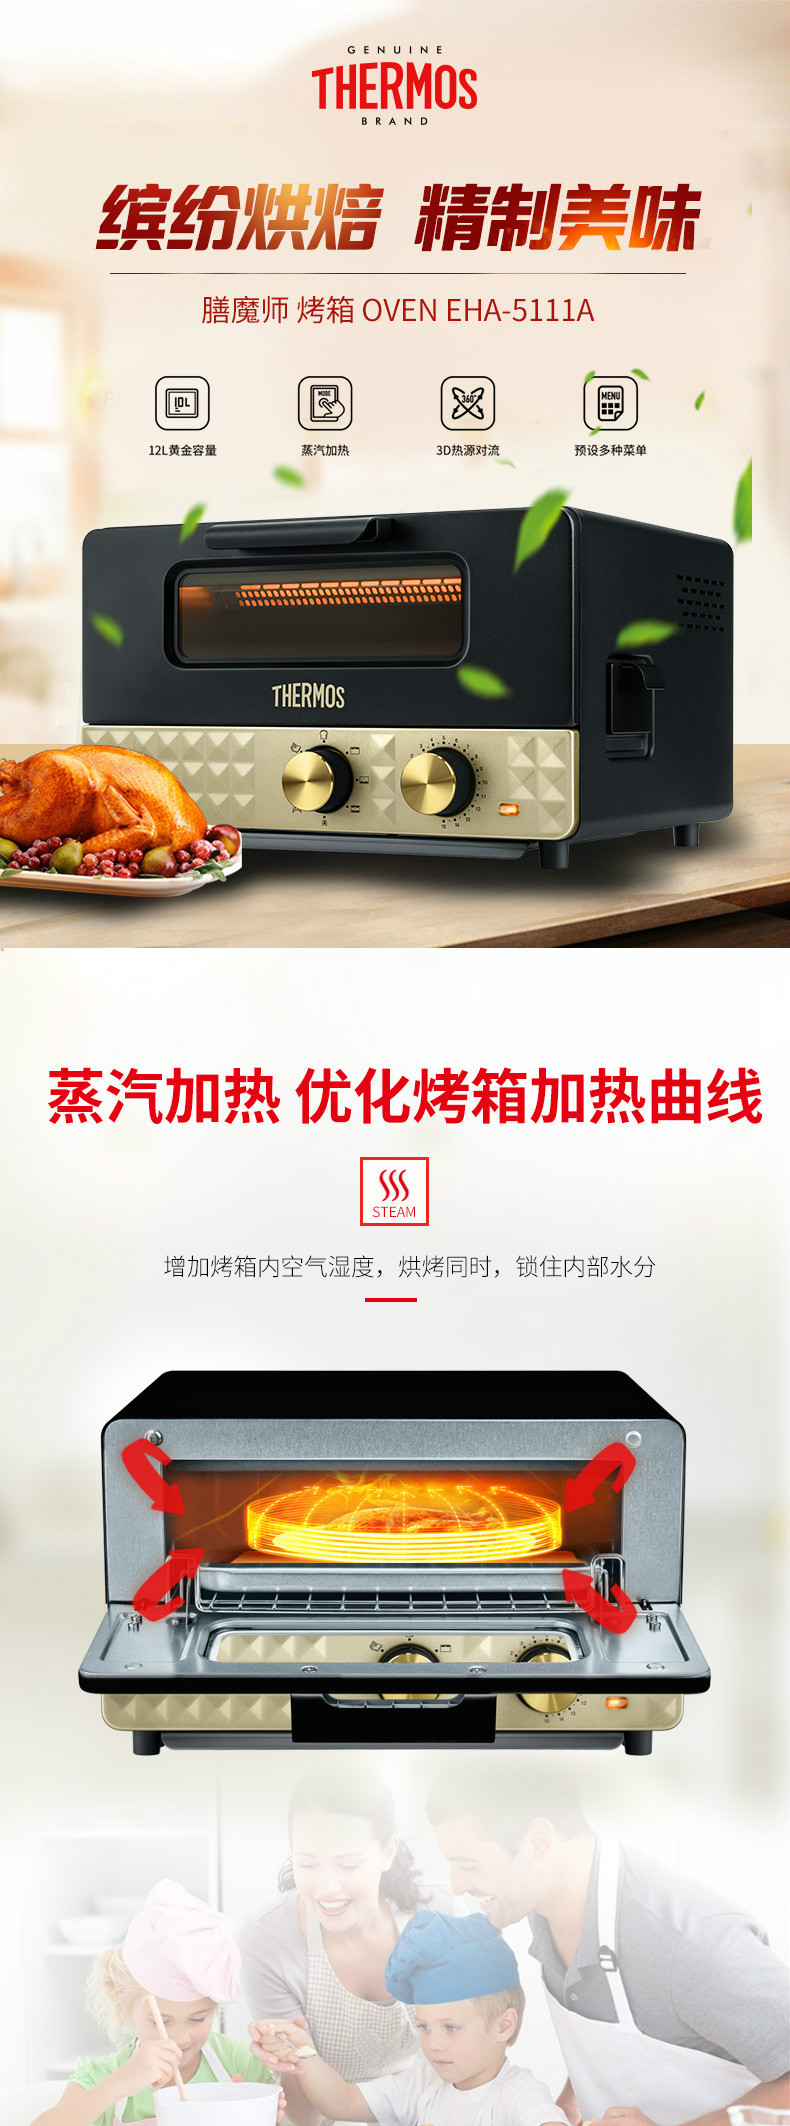 膳魔师/THERMOS EHA-5111A 蒸汽烤箱 家用小烤箱电烤箱 家用烘焙